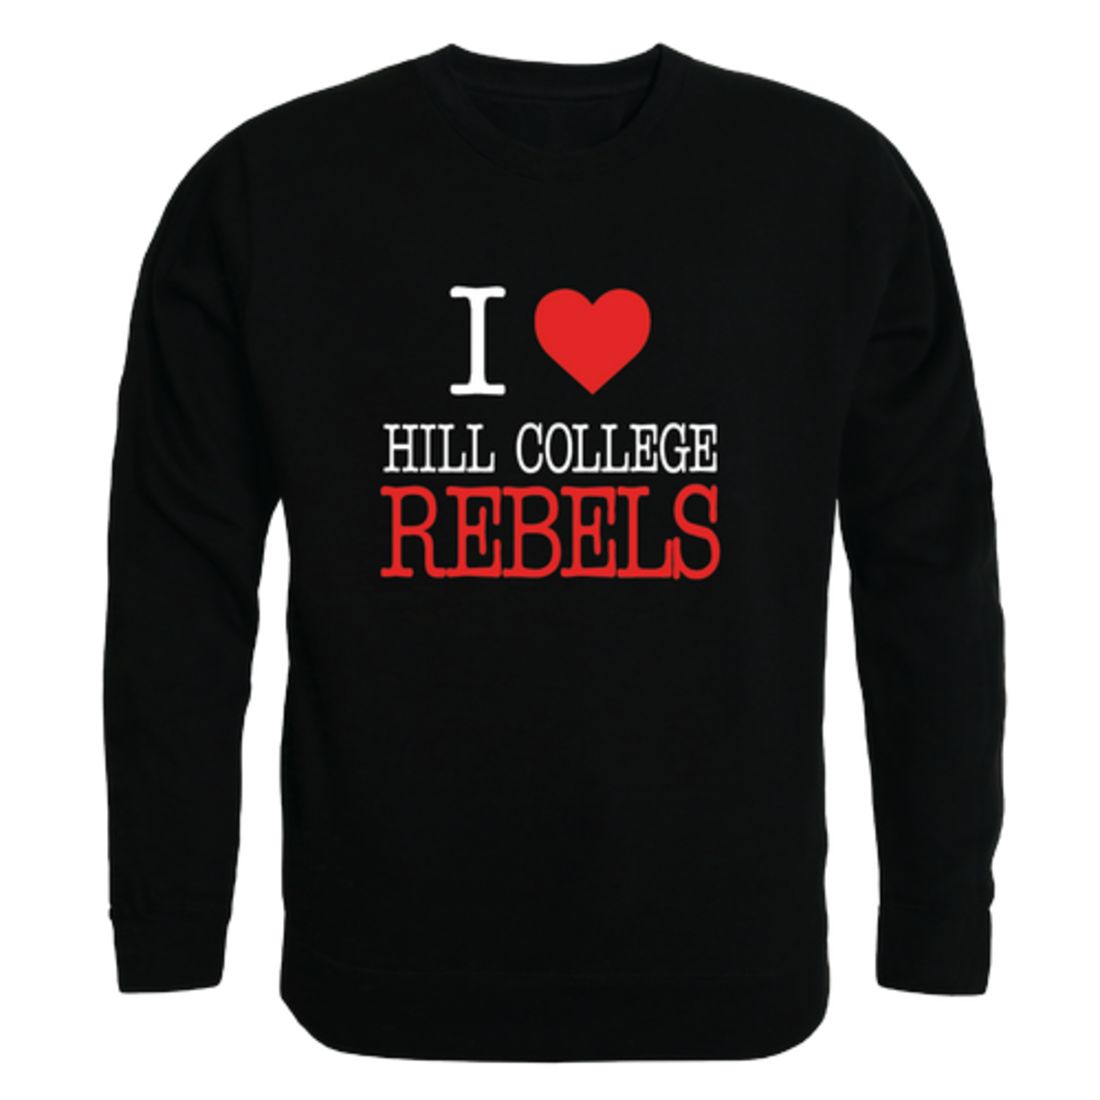 I-Love-Hill-College-Rebels-Fleece-Crewneck-Pullover-Sweatshirt